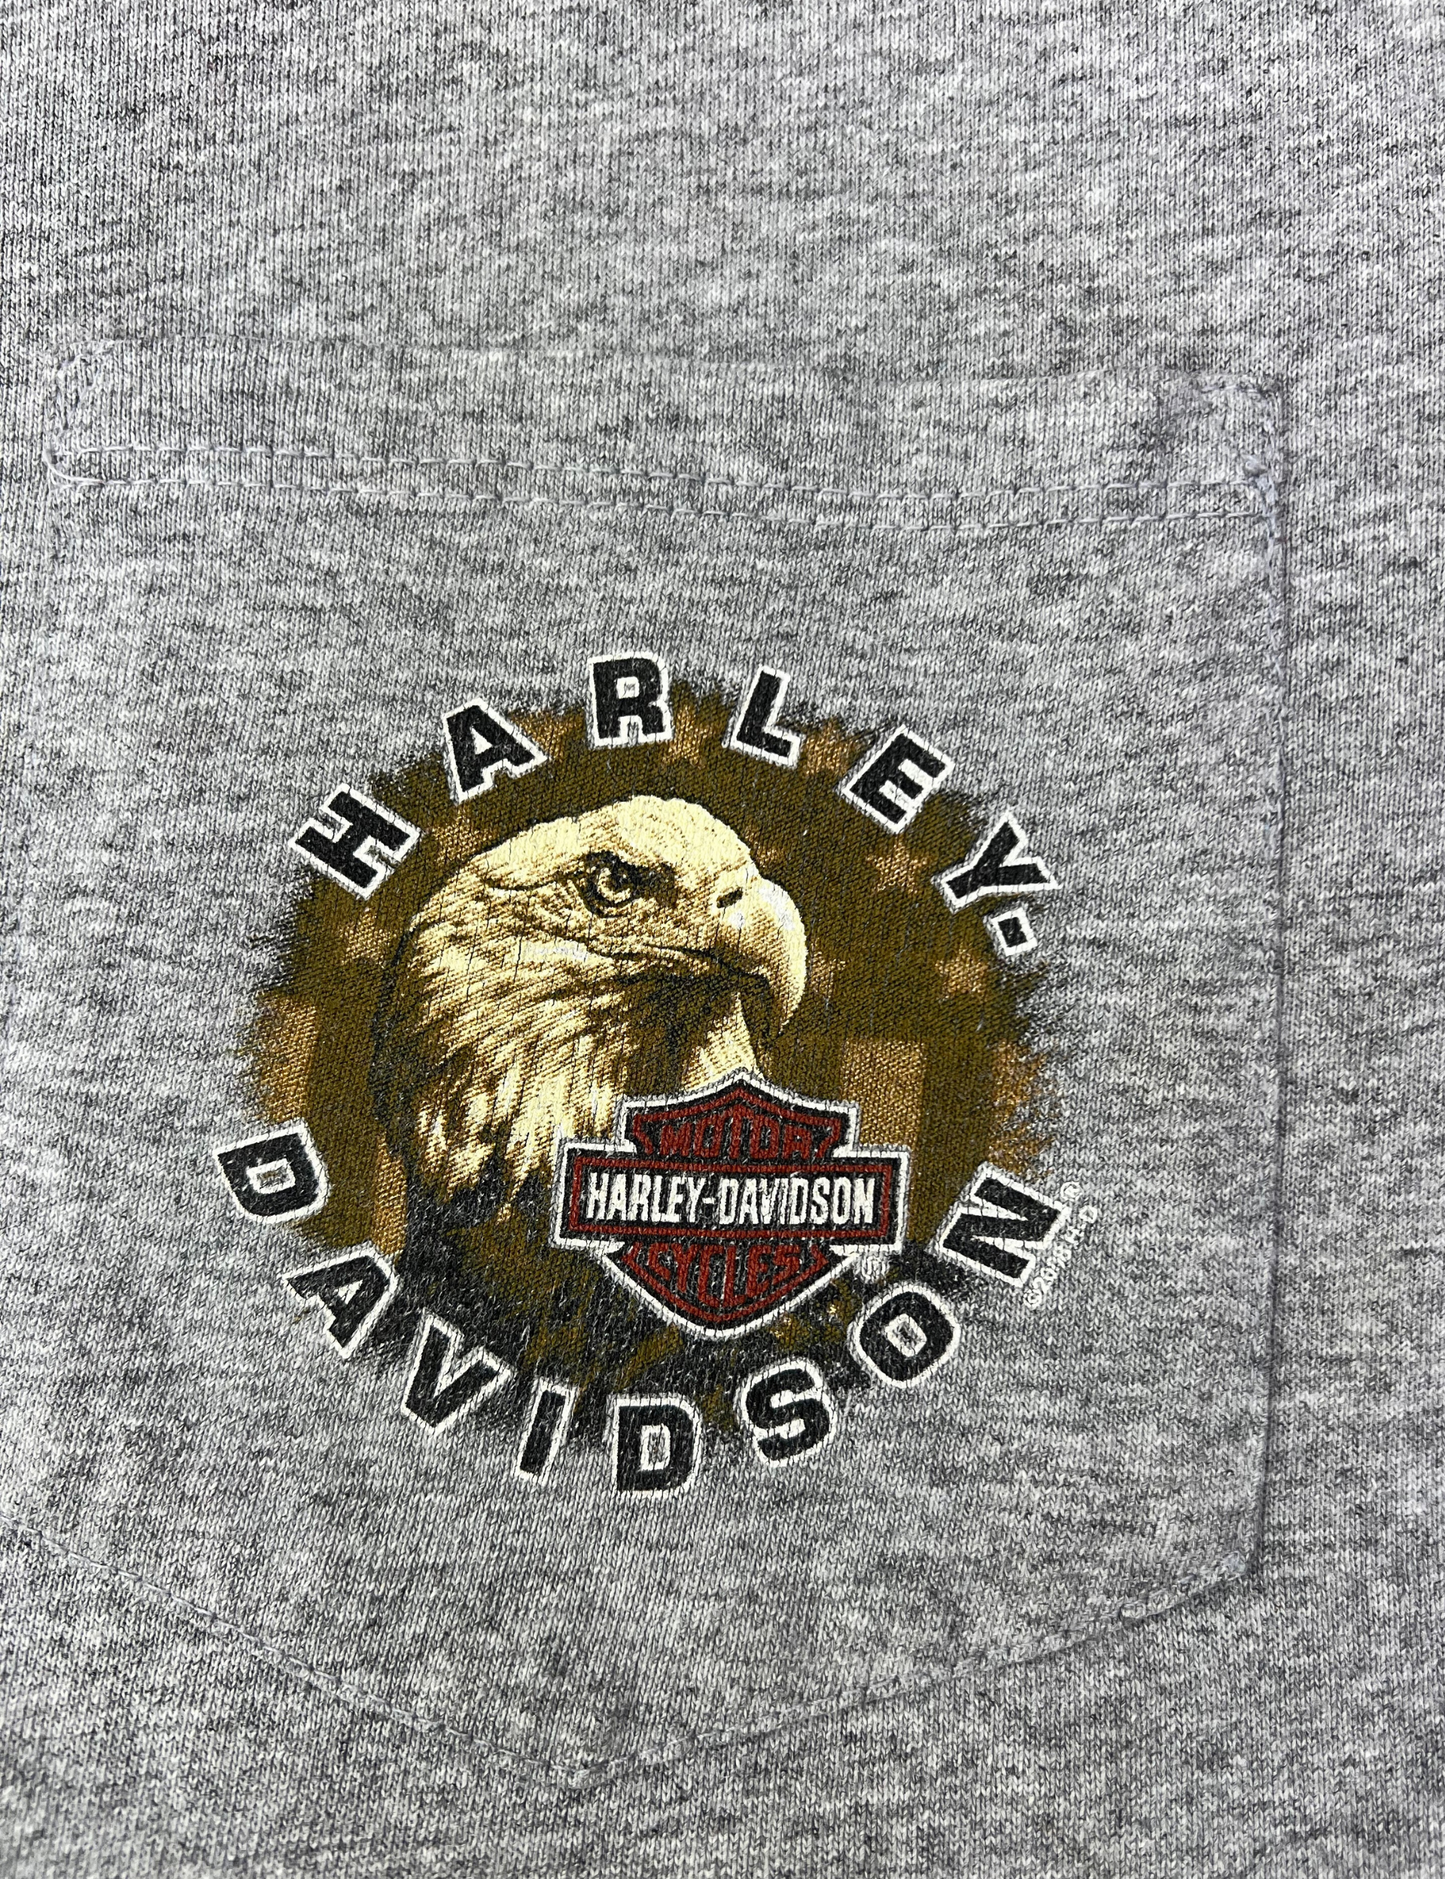 2000 Harley Davidson House of Harley Bald Eagle Pocket Tshirt Size L/XL